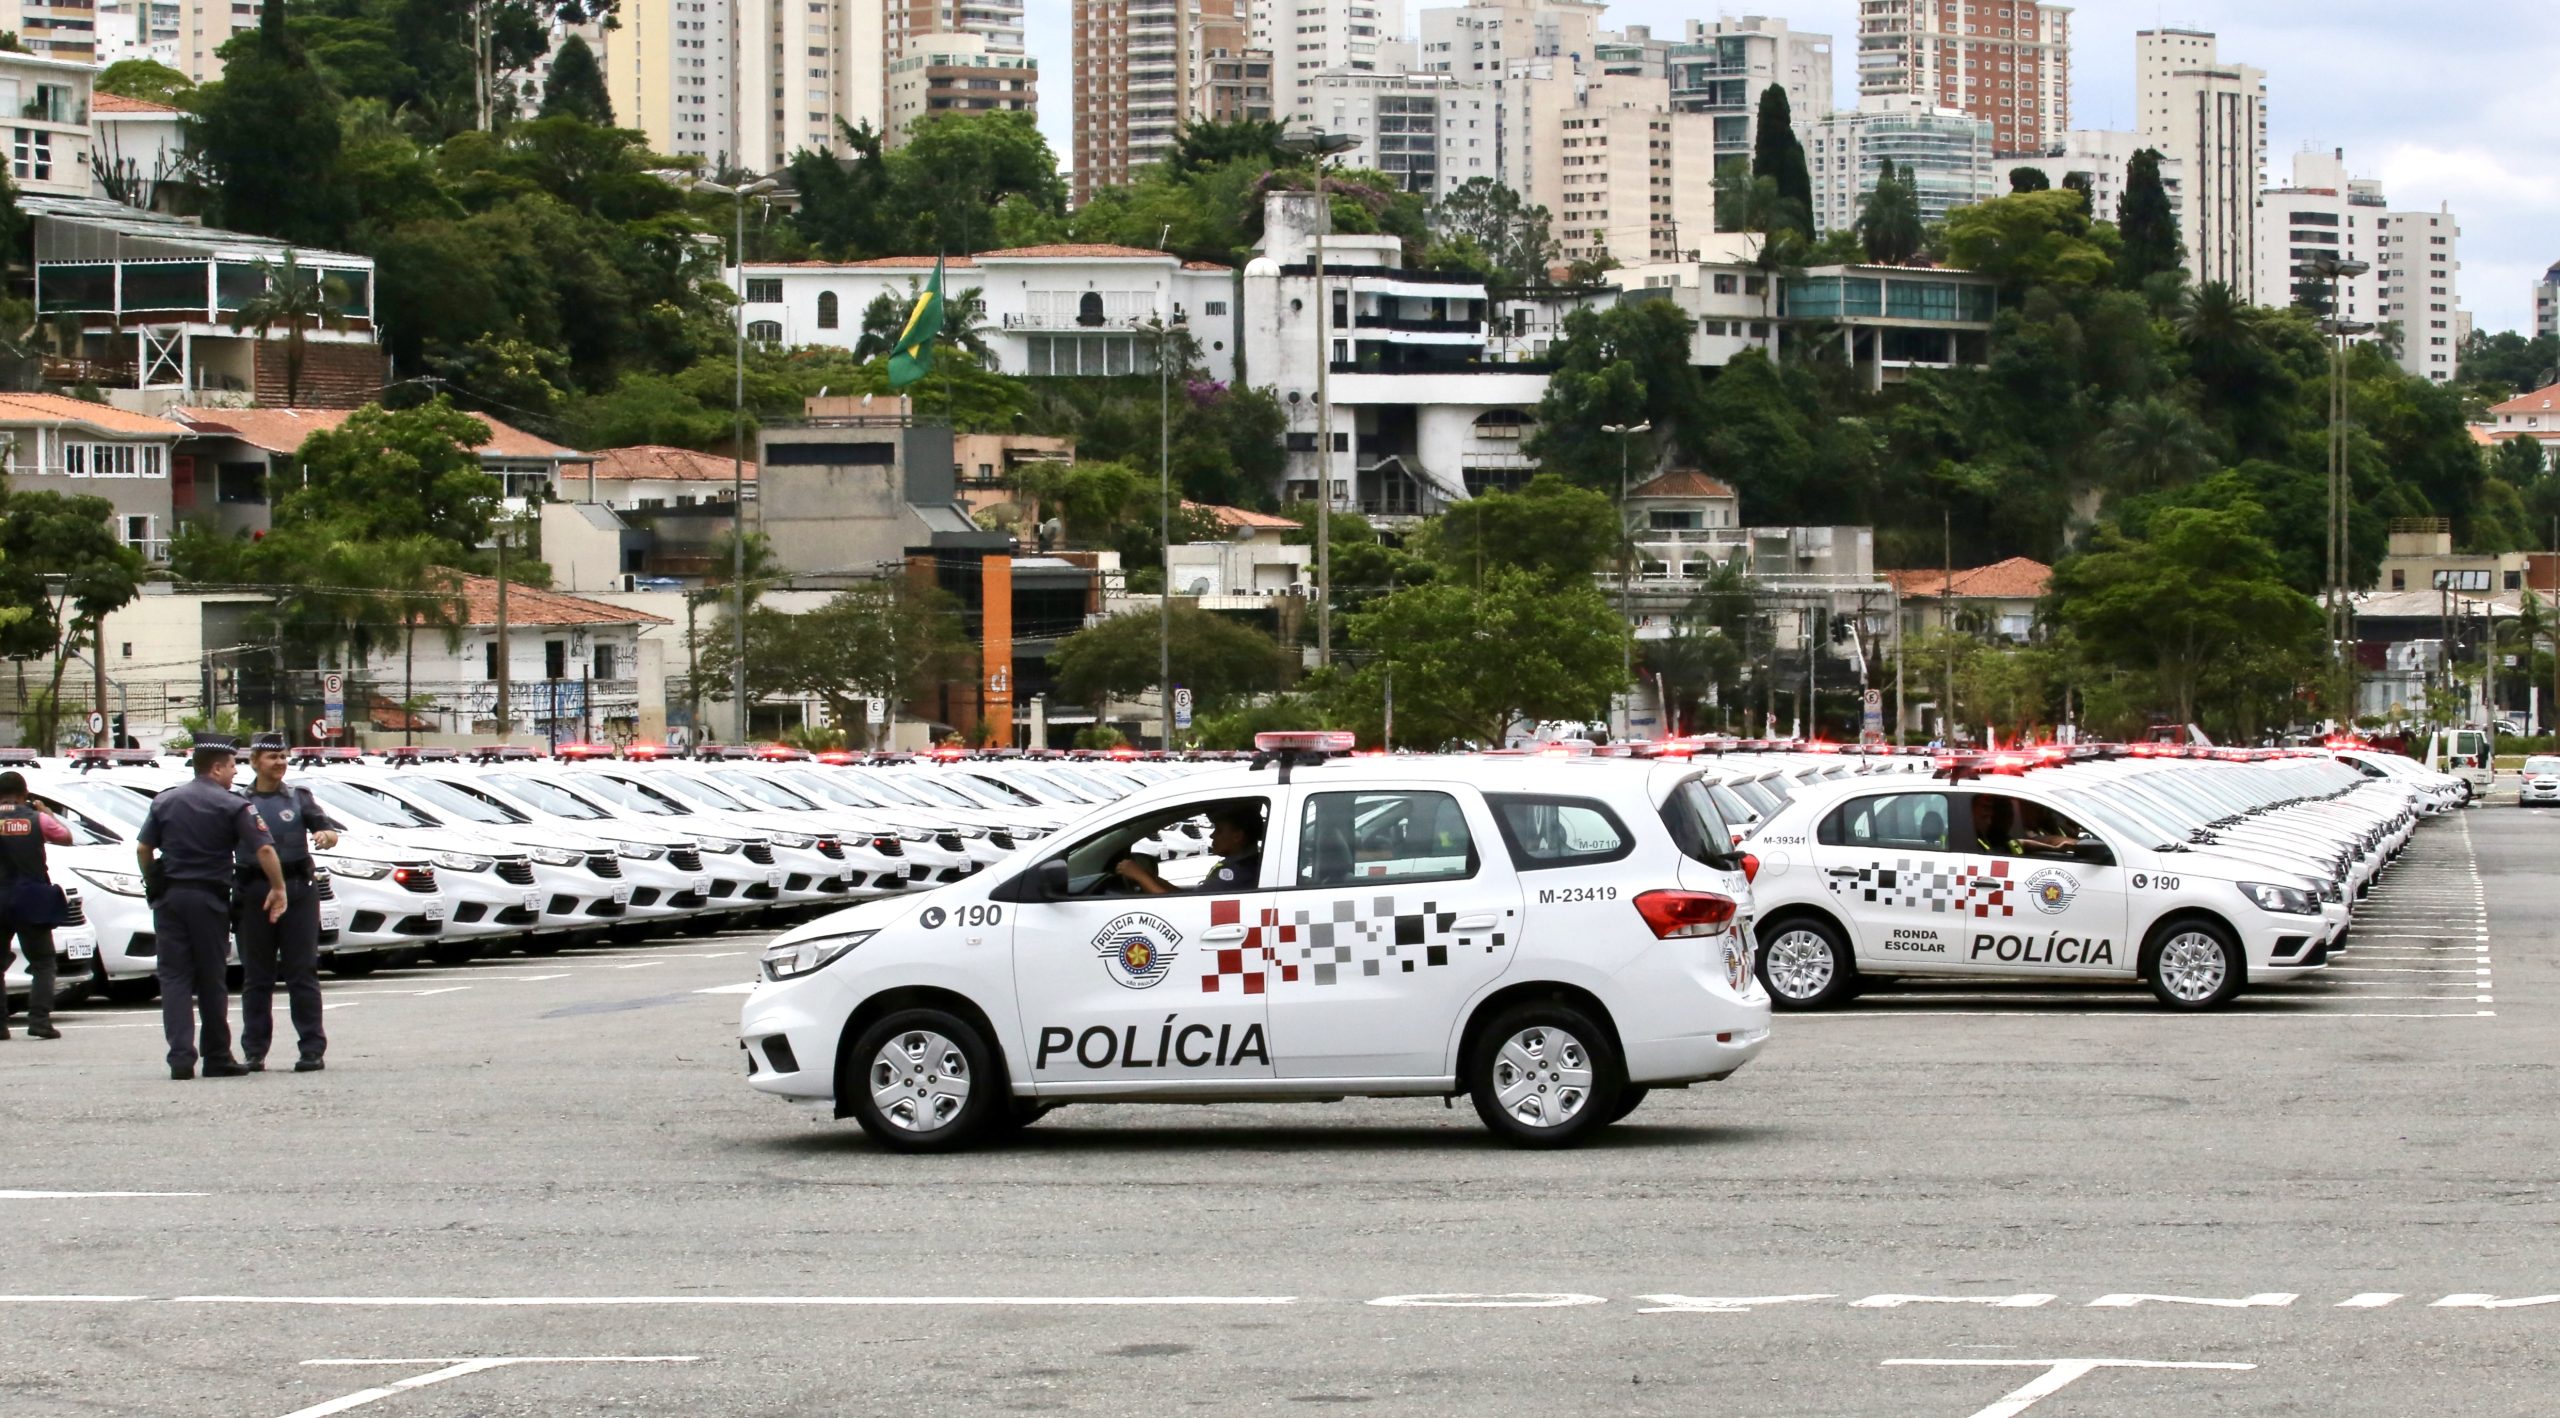 Governo muda cor dos carros da Polícia Militar em São Paulo - Notícias - R7  São Paulo